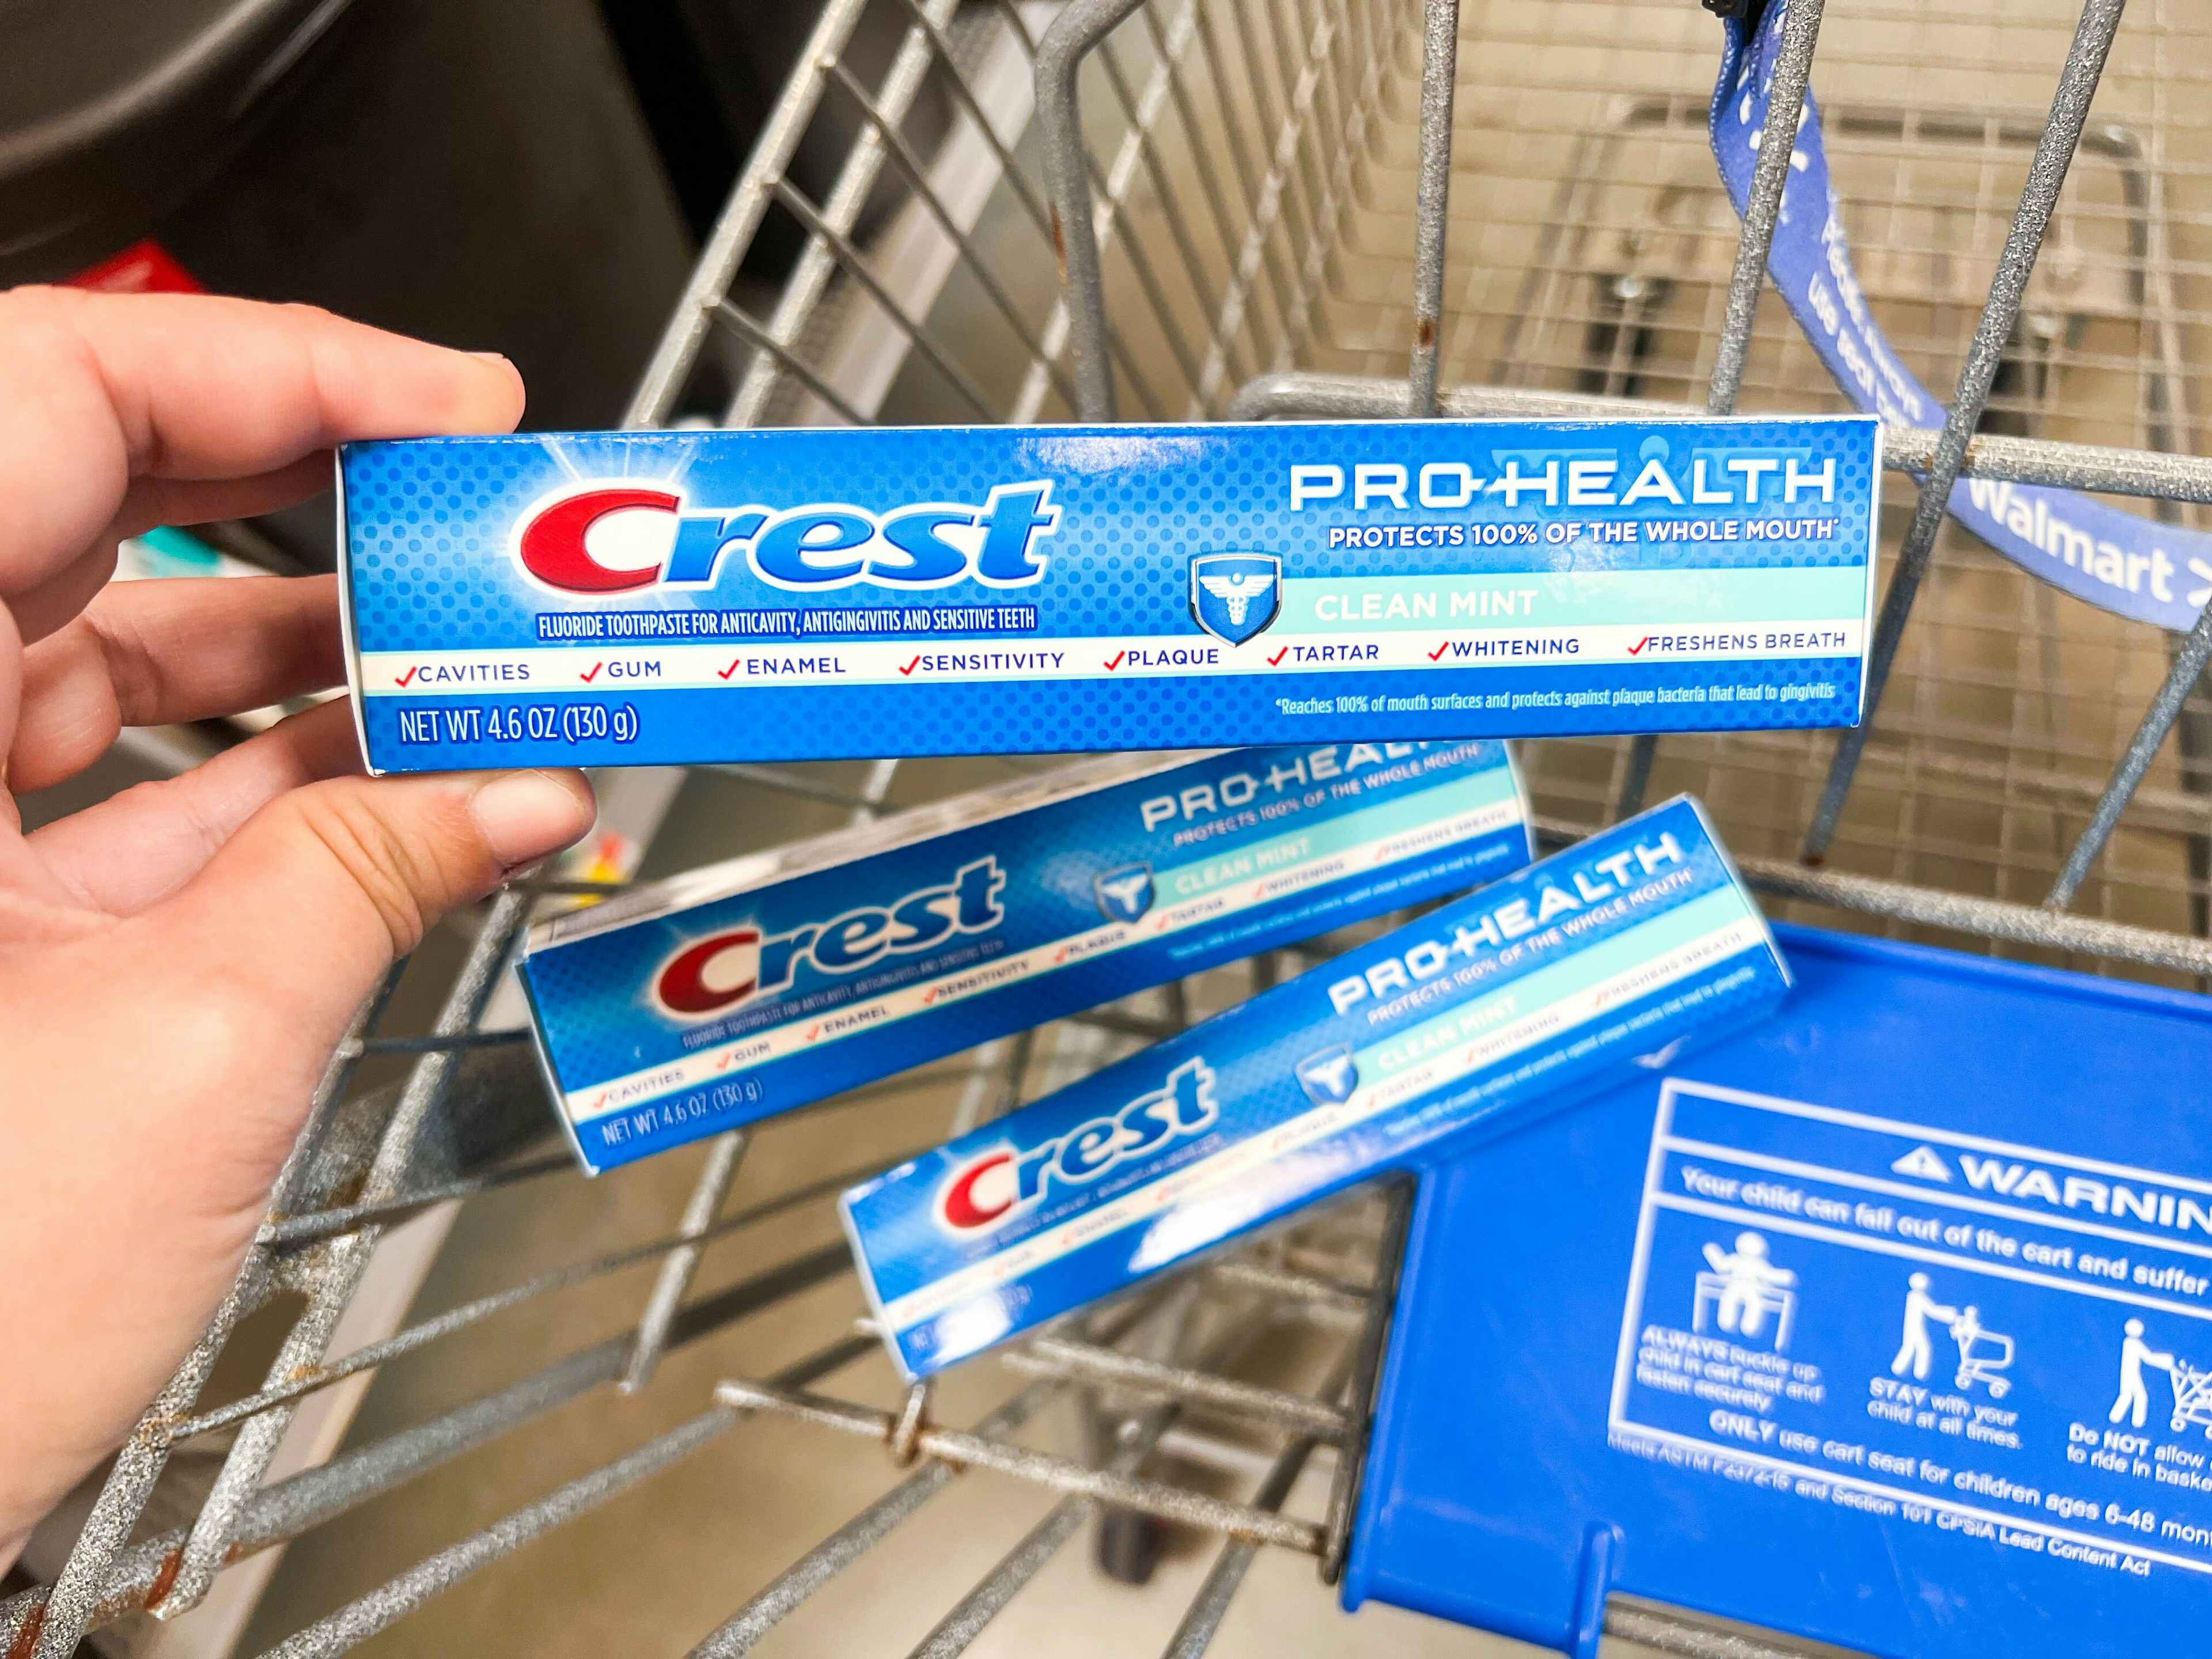 walmart-crest-pro-health-toothpaste-2022-3